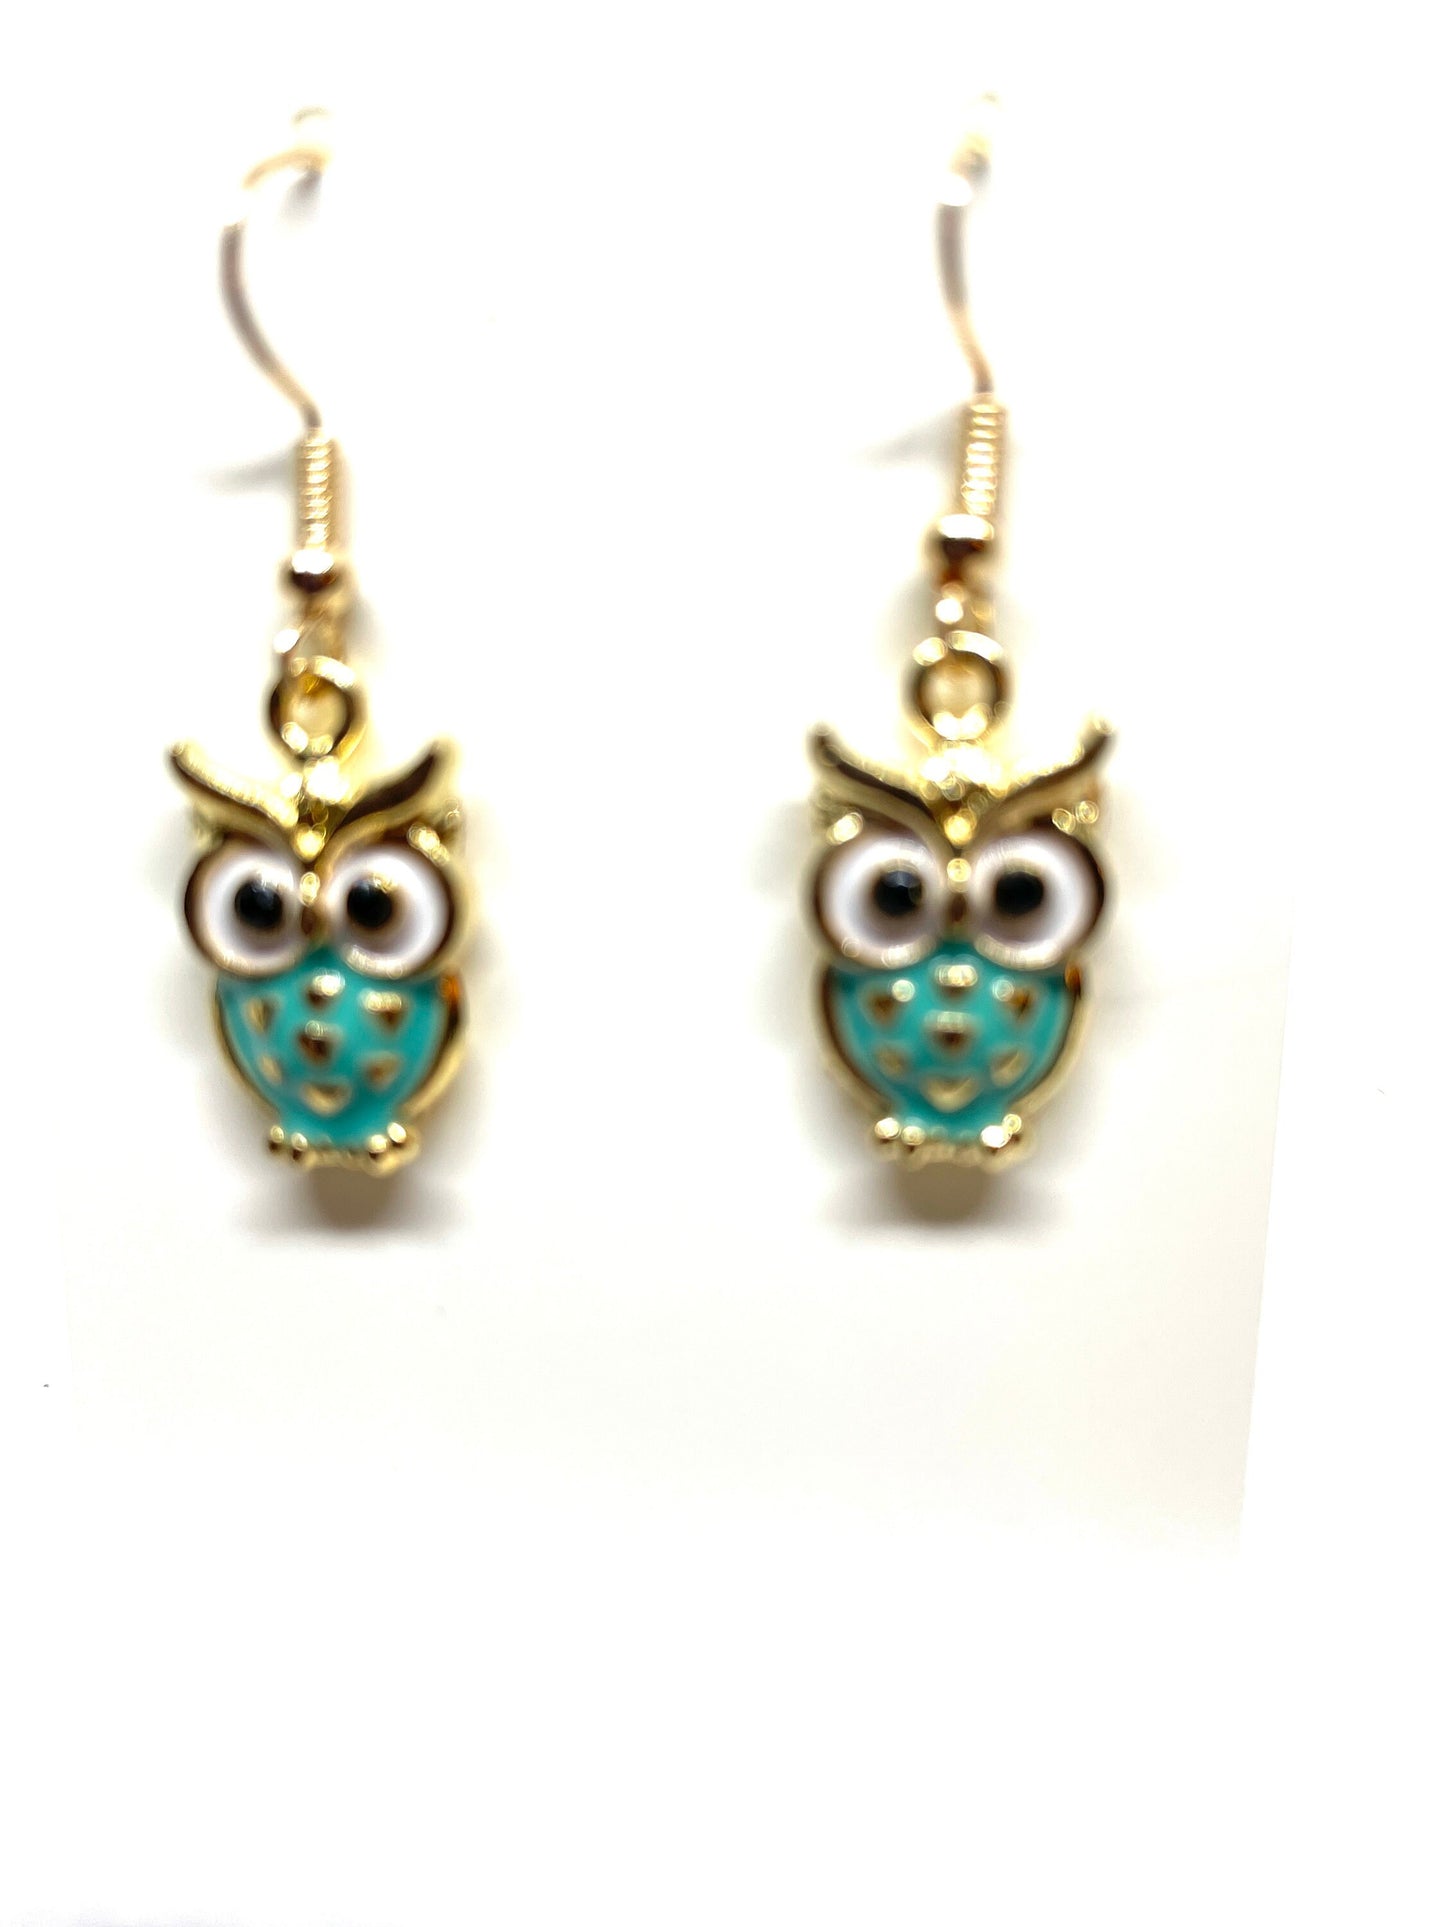 Colorful Owl Earrings, Owl Earrings, Owl Jewelry, Animal Jewelry, Bird-themed Jewelry, Enamel Owl Earrings, Owl Charm Earrings